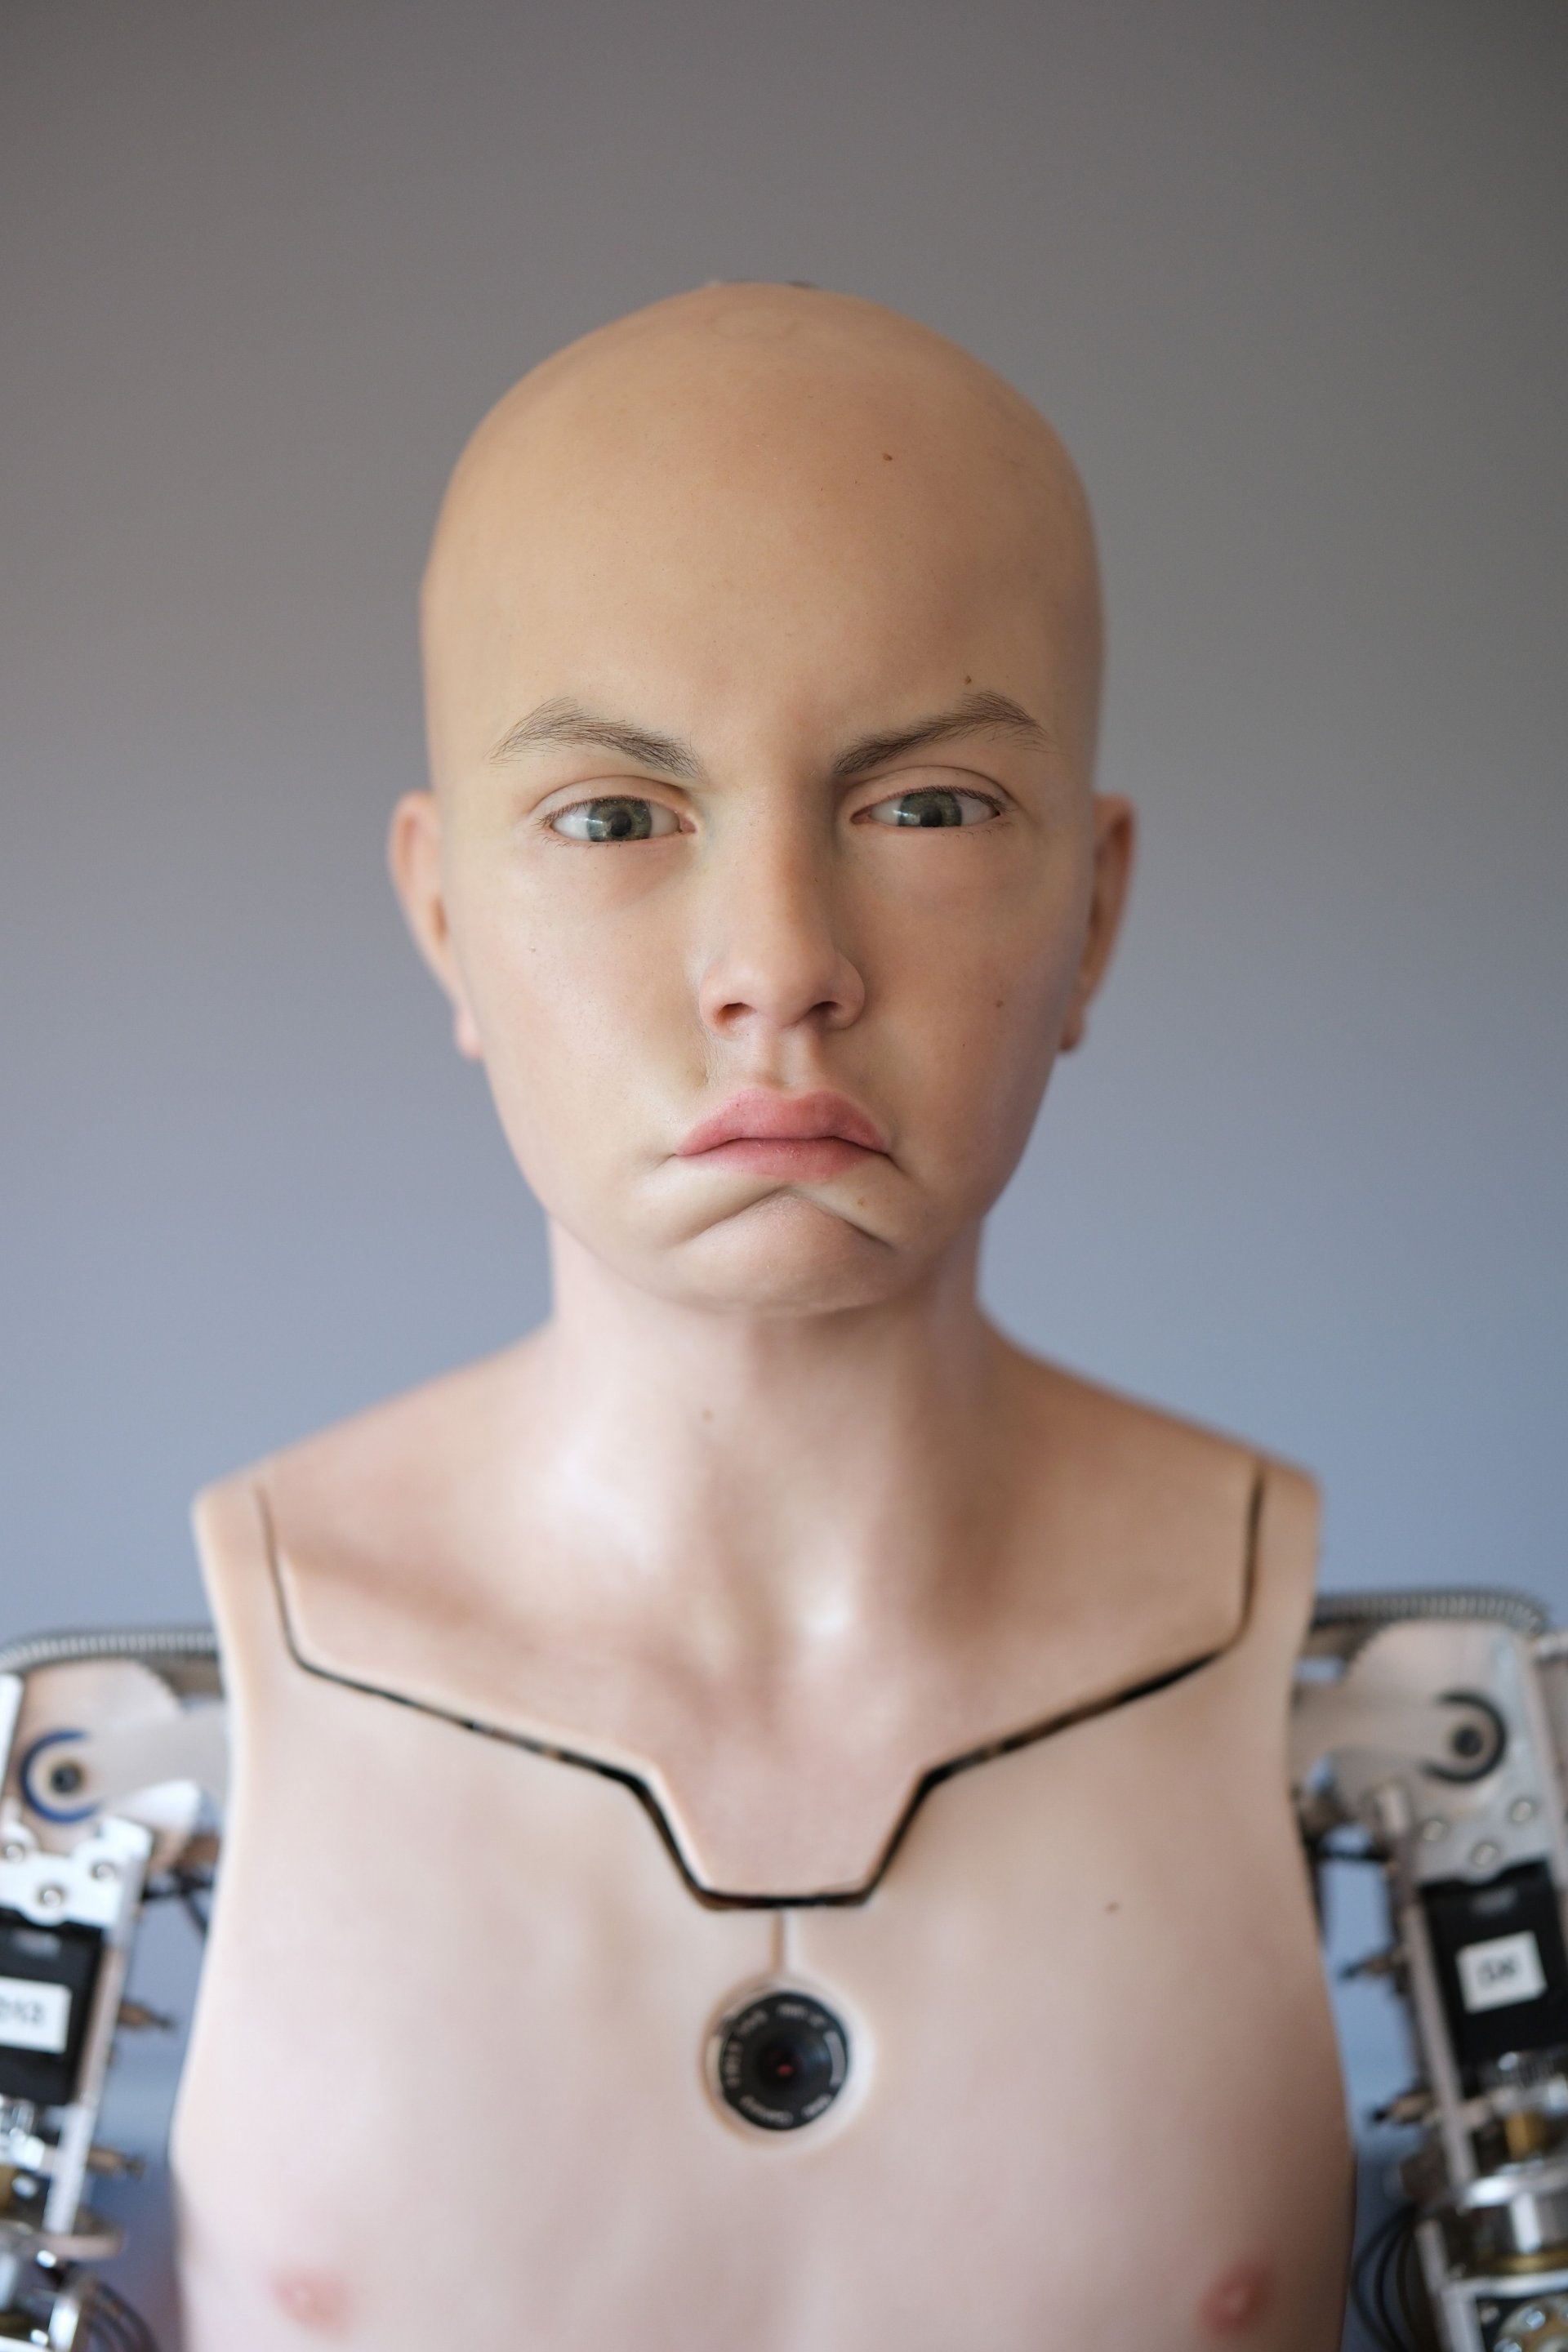 Абел е първият пример за изключително реалистичен хуманоиден робот, способен да използва генеративен изкуствен интелект и да го управлява в социален контекст, отчитайки емоциите на своите събеседници.